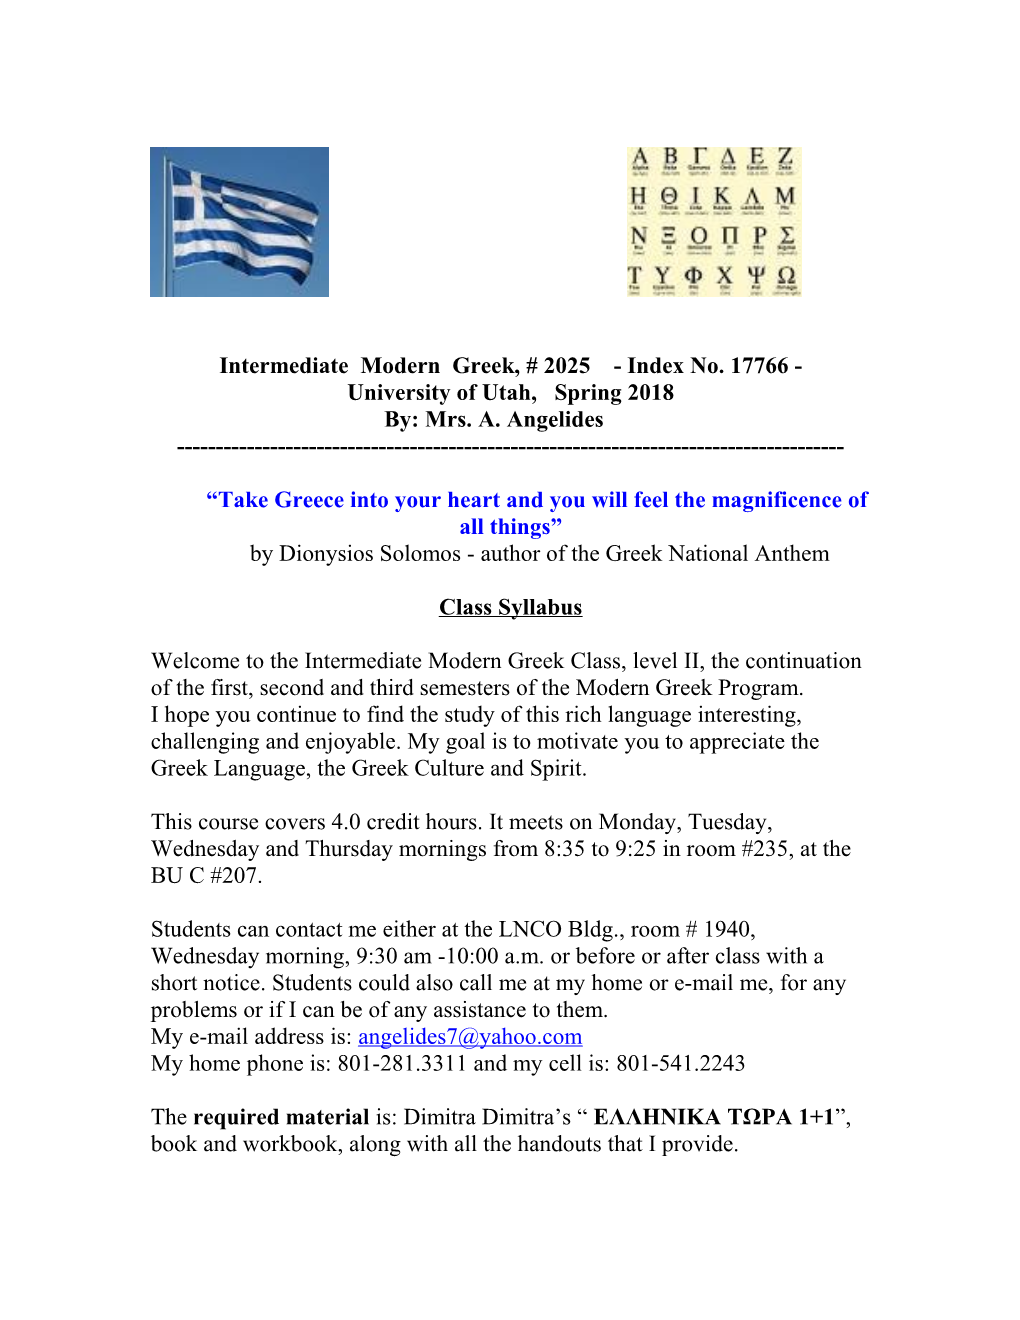 Intermediate Modern Greek, # 2025 - Index No. 17766 - University of Utah, Spring 2018